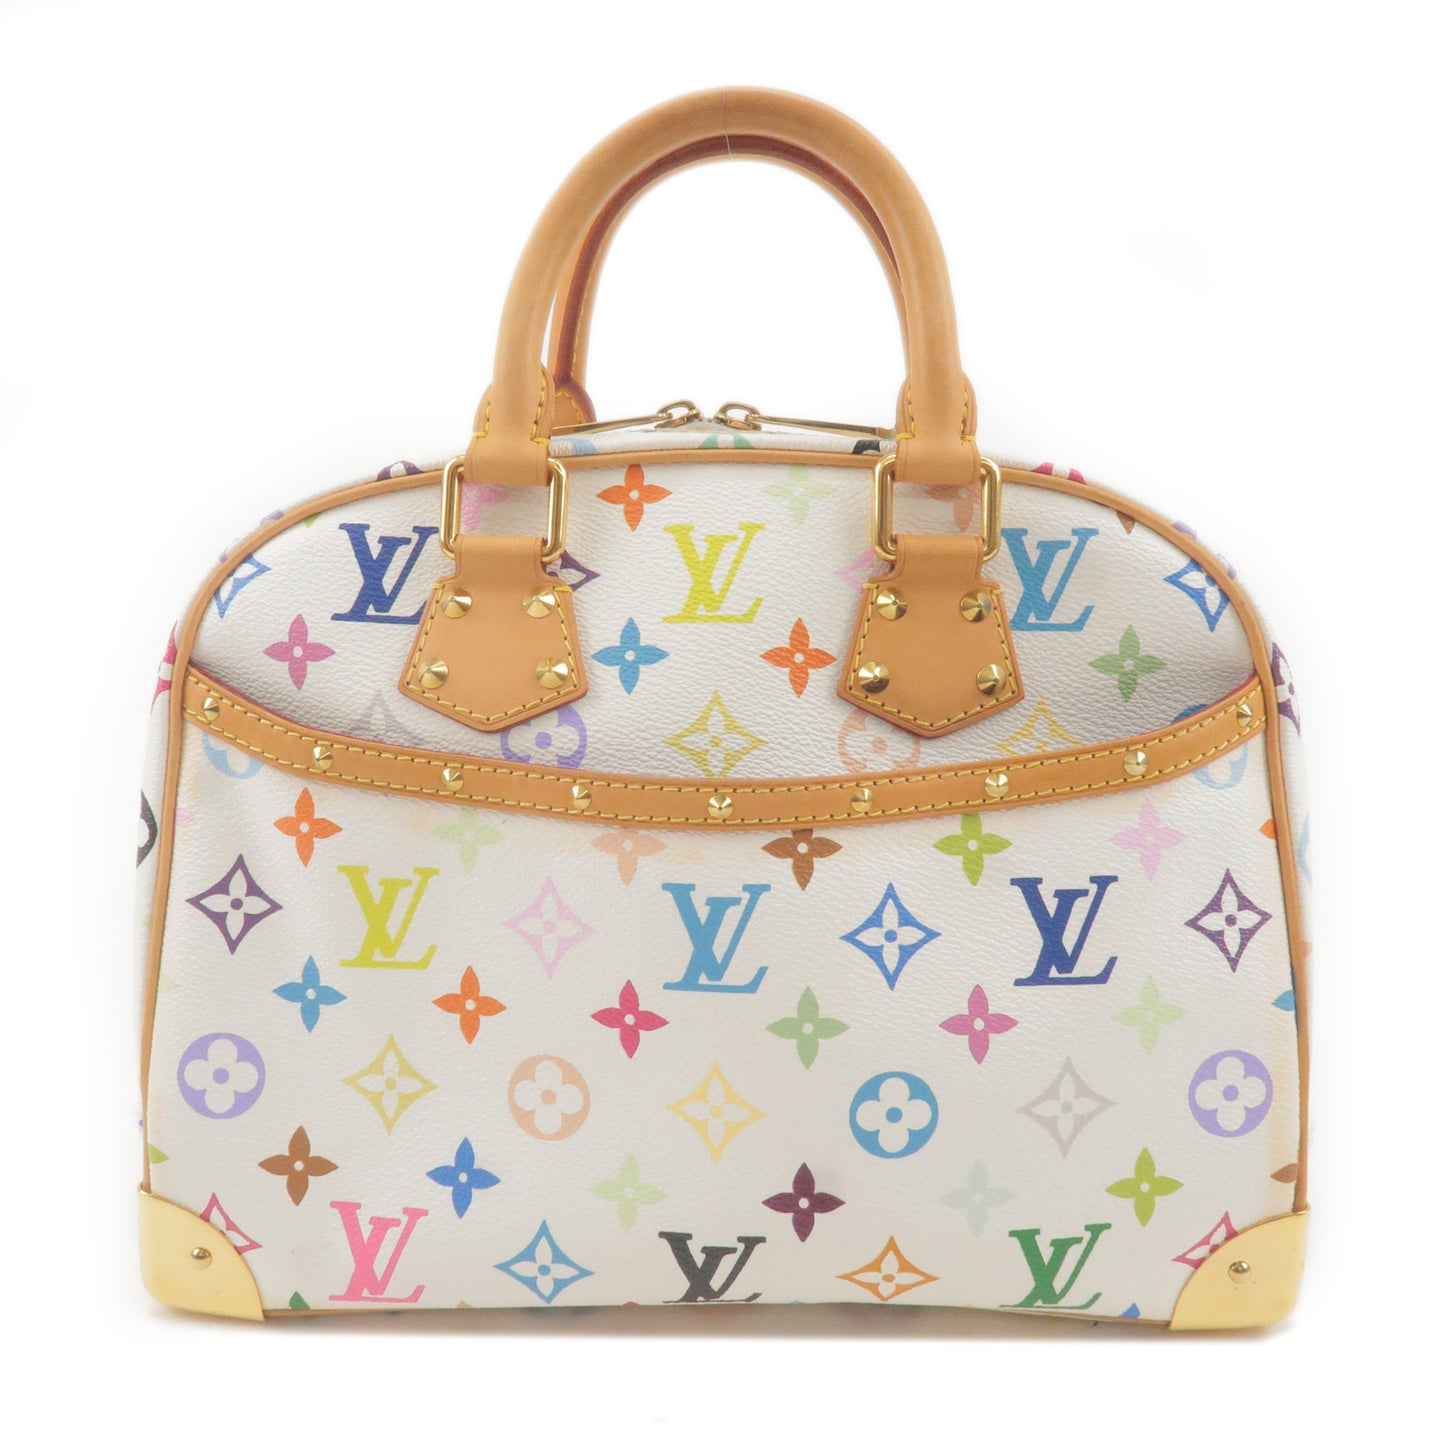 Vintage Louis Vuitton Multicolor Trouville Top Handle Bag